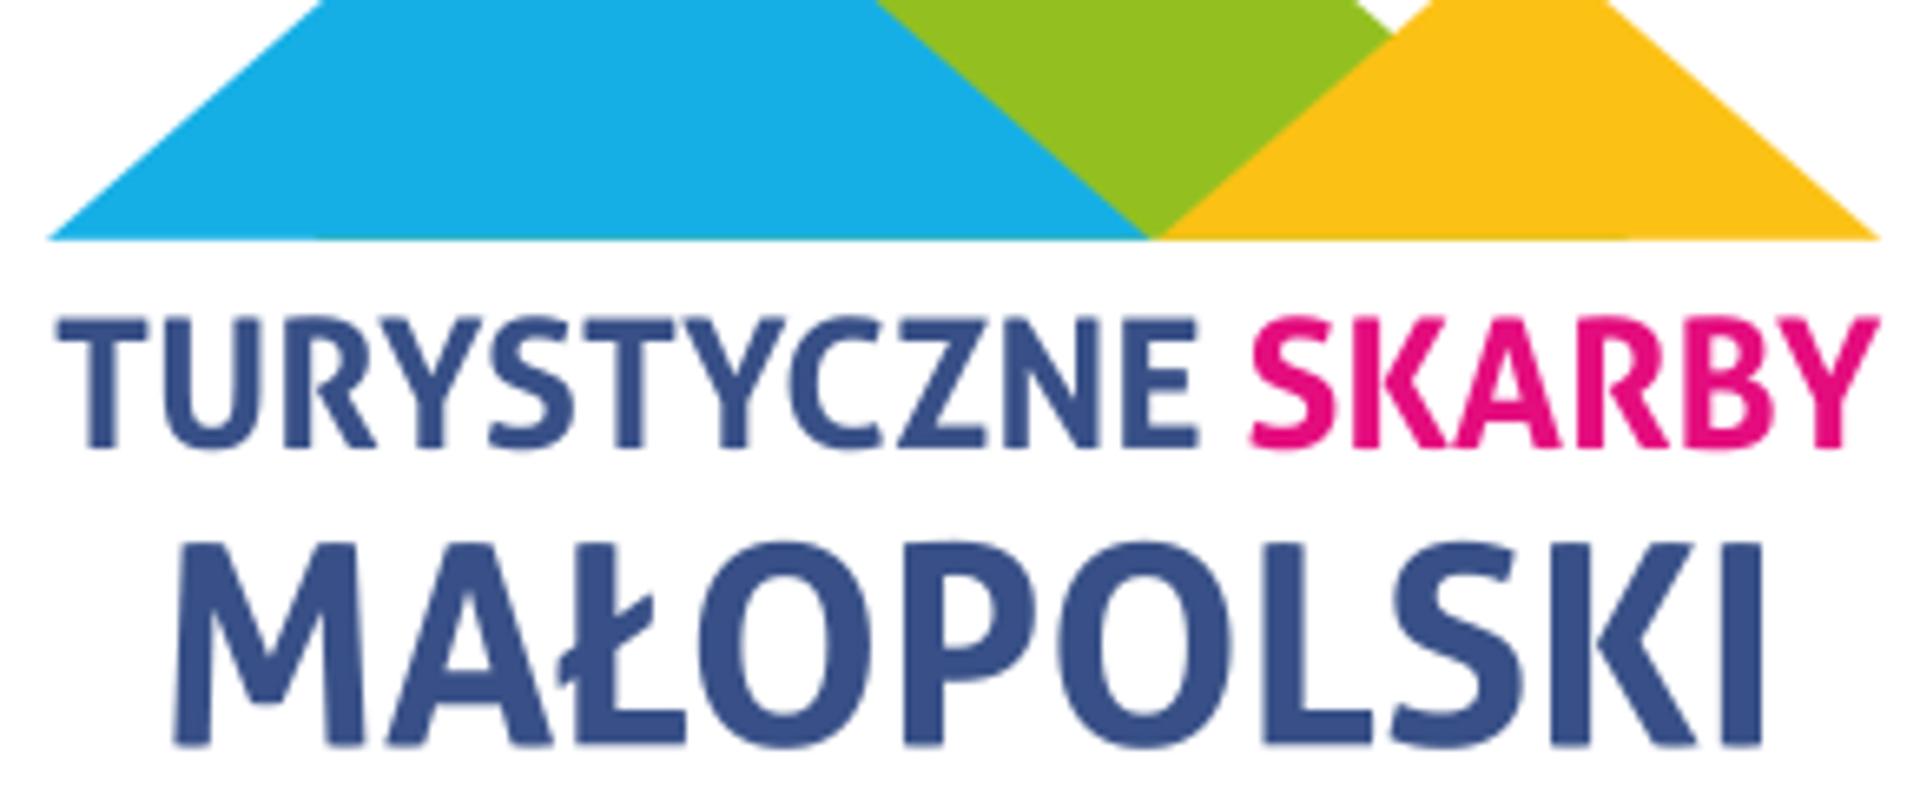 Kolorowe logo kształtem przypominające diament, w środku napis Turystyczne Skarby Małopolski